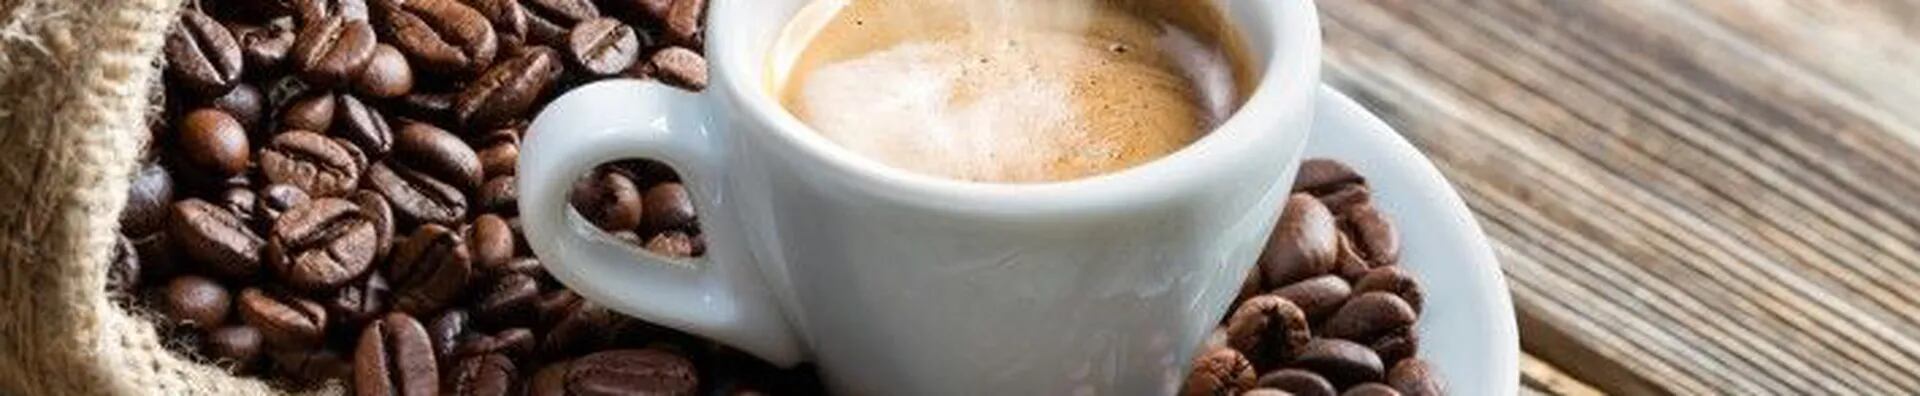 titaniccenter - Porque los amantes del café saben diferenciar y disfrutar  de una buena taza de esta mágica bebida. ☕✨ Con la cafetera profesional  barista Breville prepara deliciosos expresos ☕ en menos